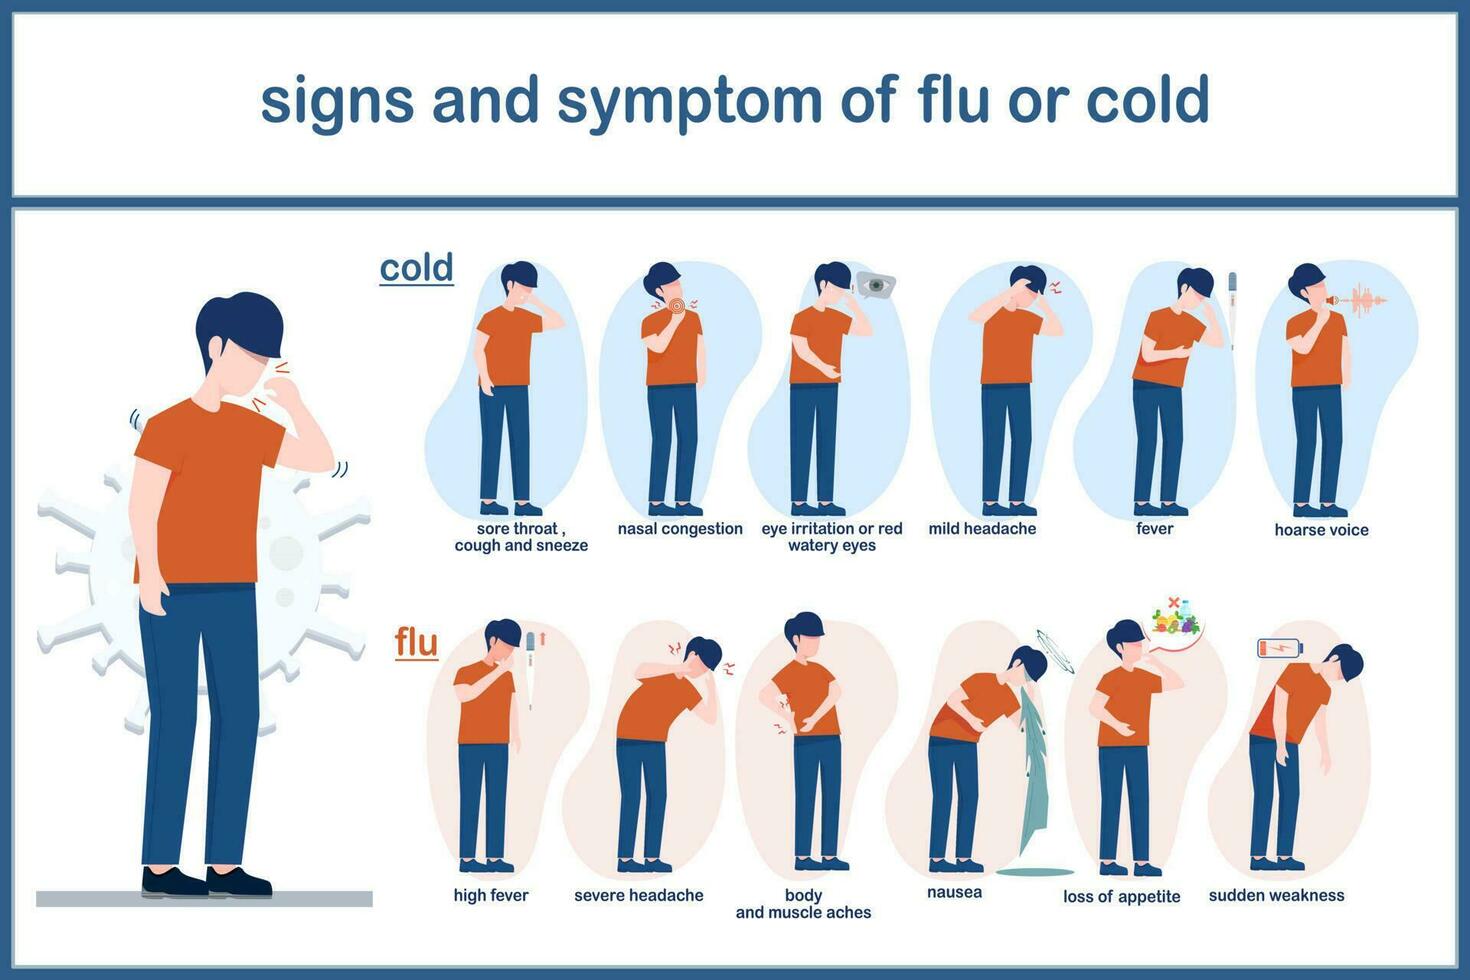 diferencia de síntomas Entre común frío y gripe, adulto hombre vistiendo naranja camisa y oscuro azul pantalones en diferente síntomas cuando teniendo frío y gripe. vector ilustración concepto para salud cuidado.